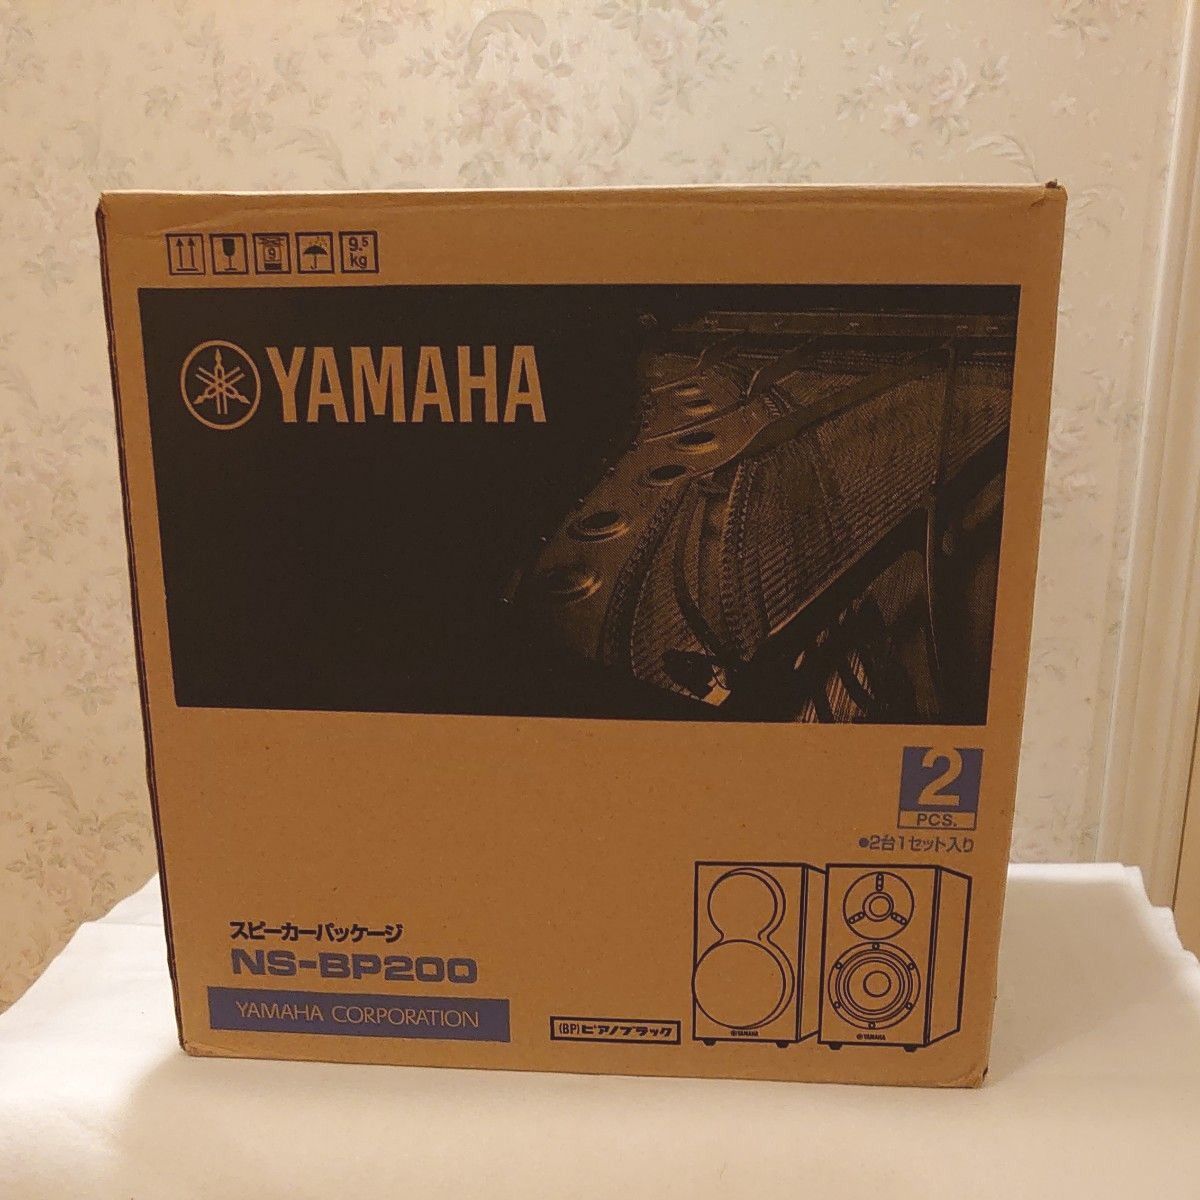 中古美品YAMAHAのスピーカー NS-BP200 本体のみのペアセット 元箱有り